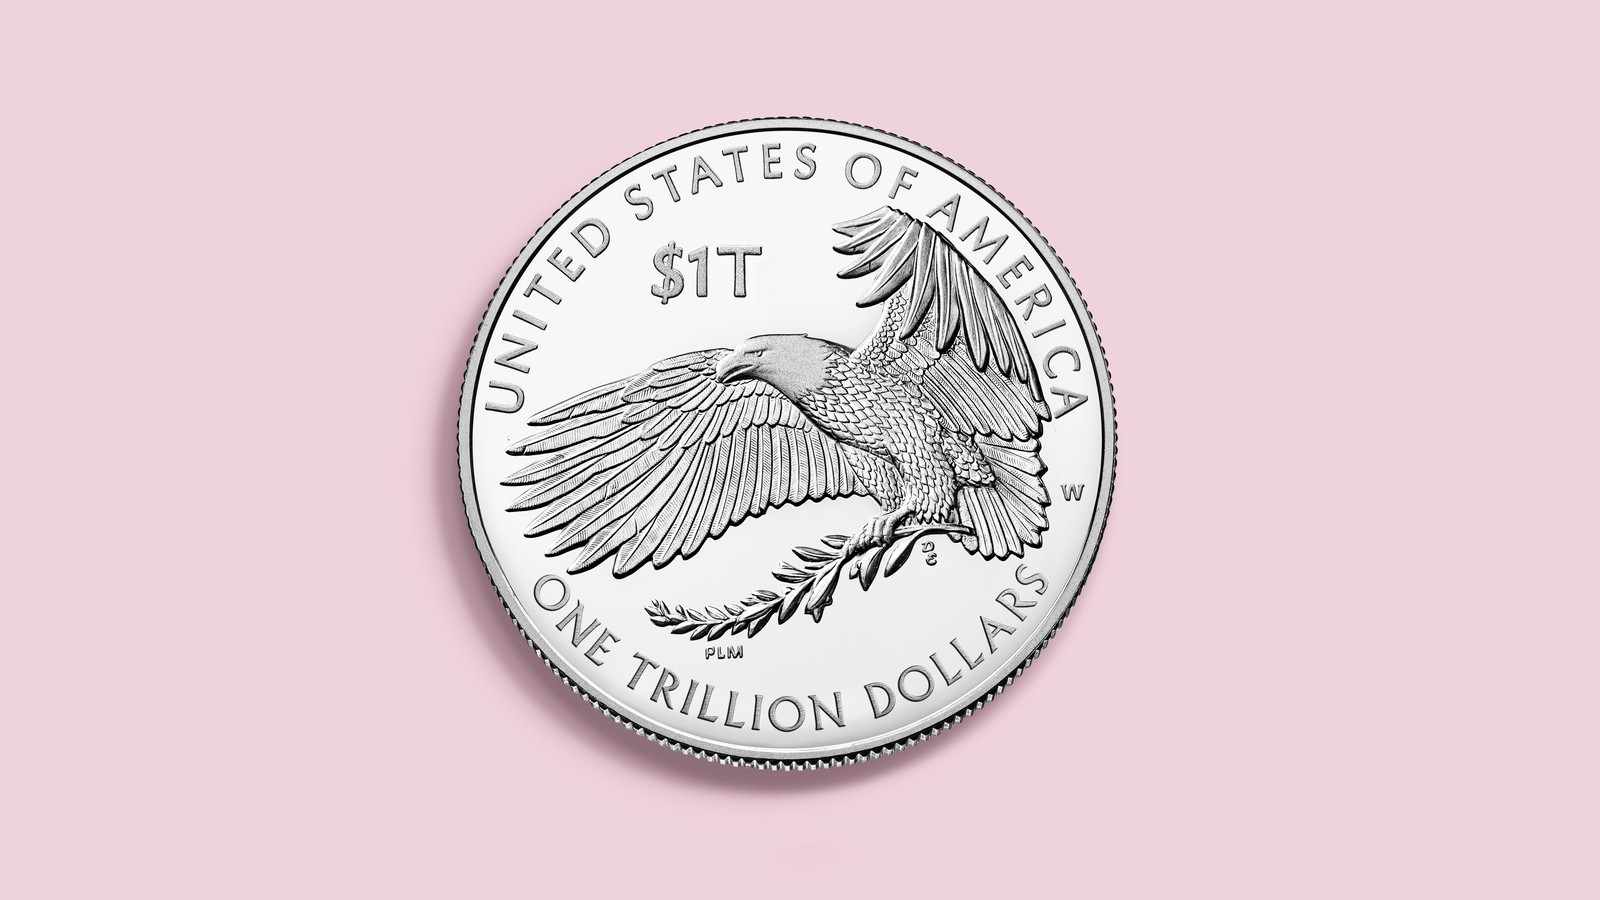 dollar coins